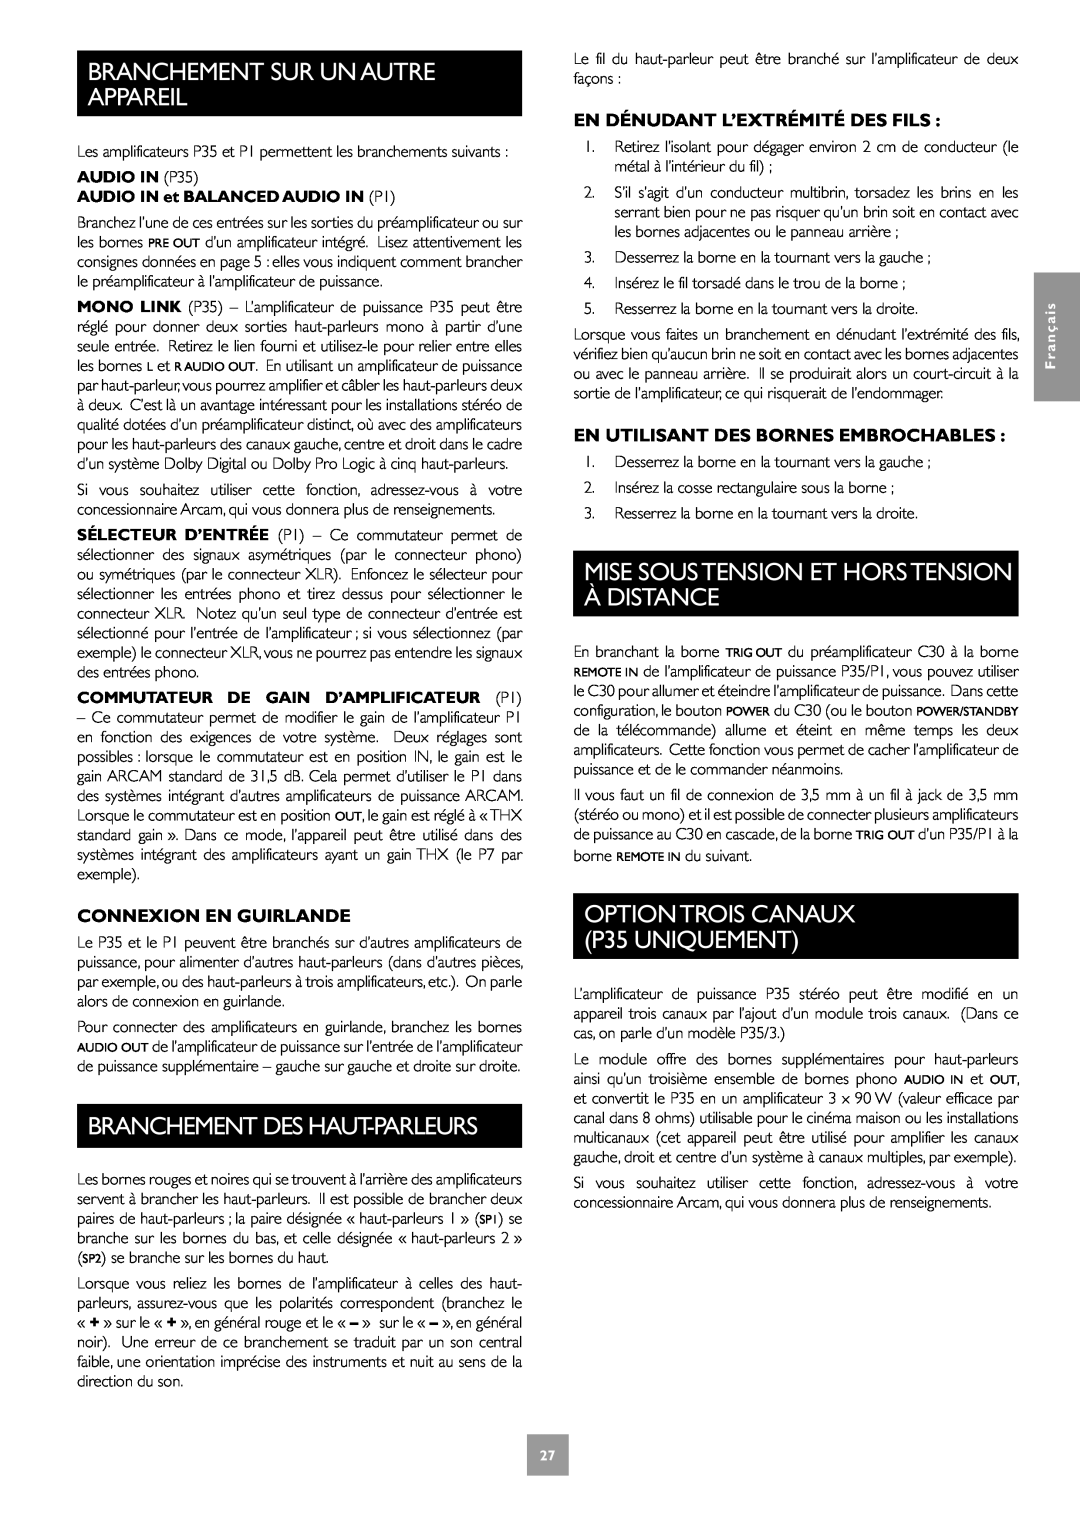 Arcam C30, P35, P1 manual Branchement Des Haut-Parleurs, Mise Soustension Et Horstension À Distance, Connexion En Guirlande 